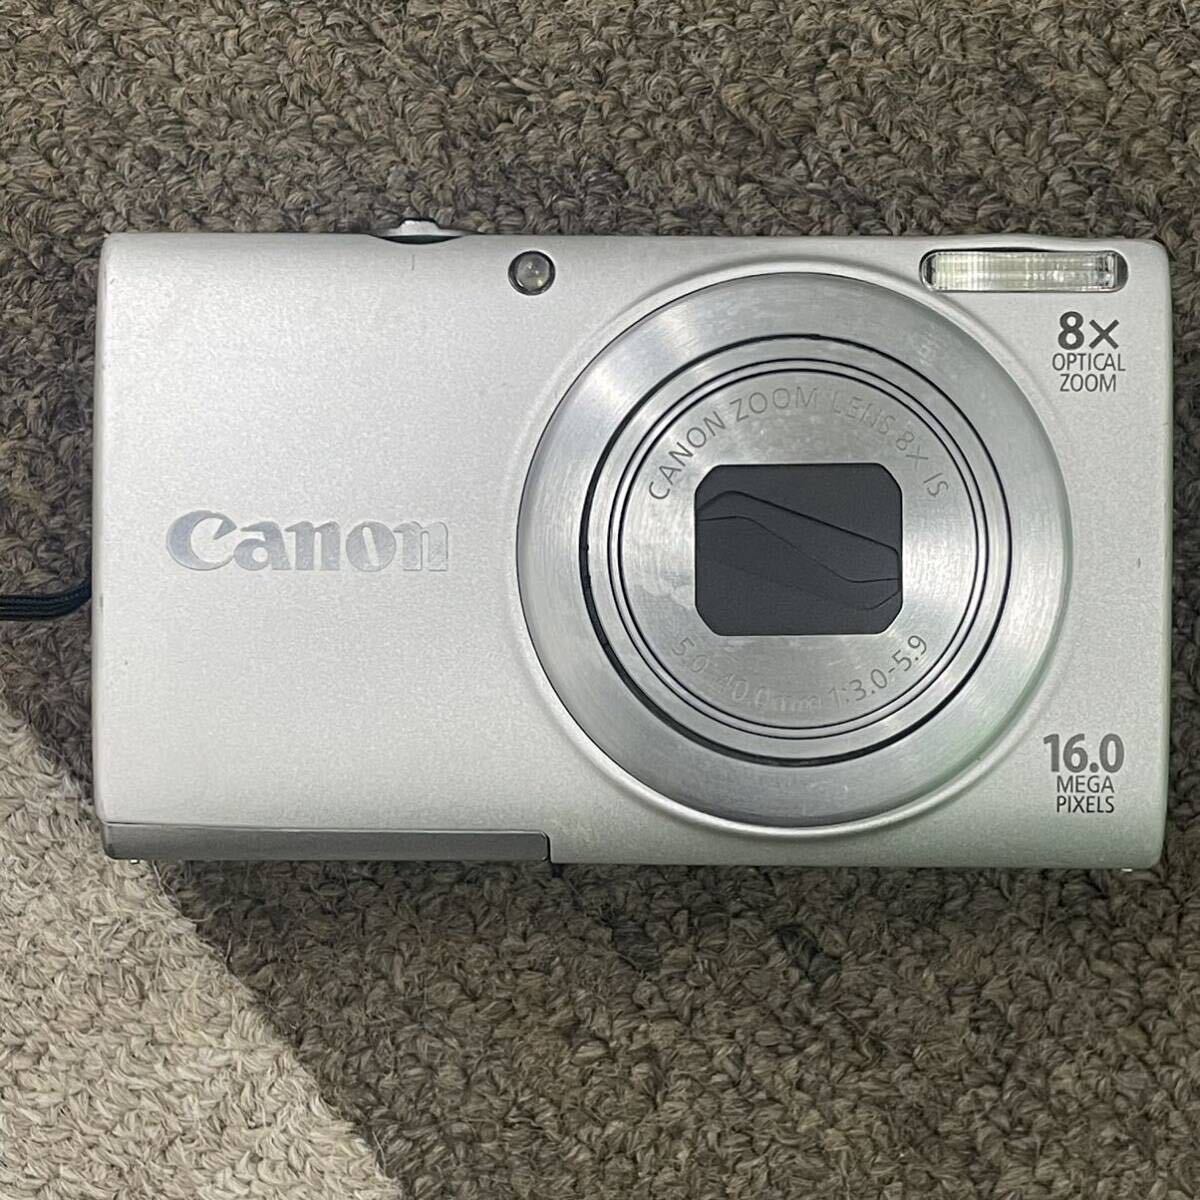 Canon キャノン コンパクトデジタルカメラ PowerShot A4000 IS PC1730 訳あり品の画像1